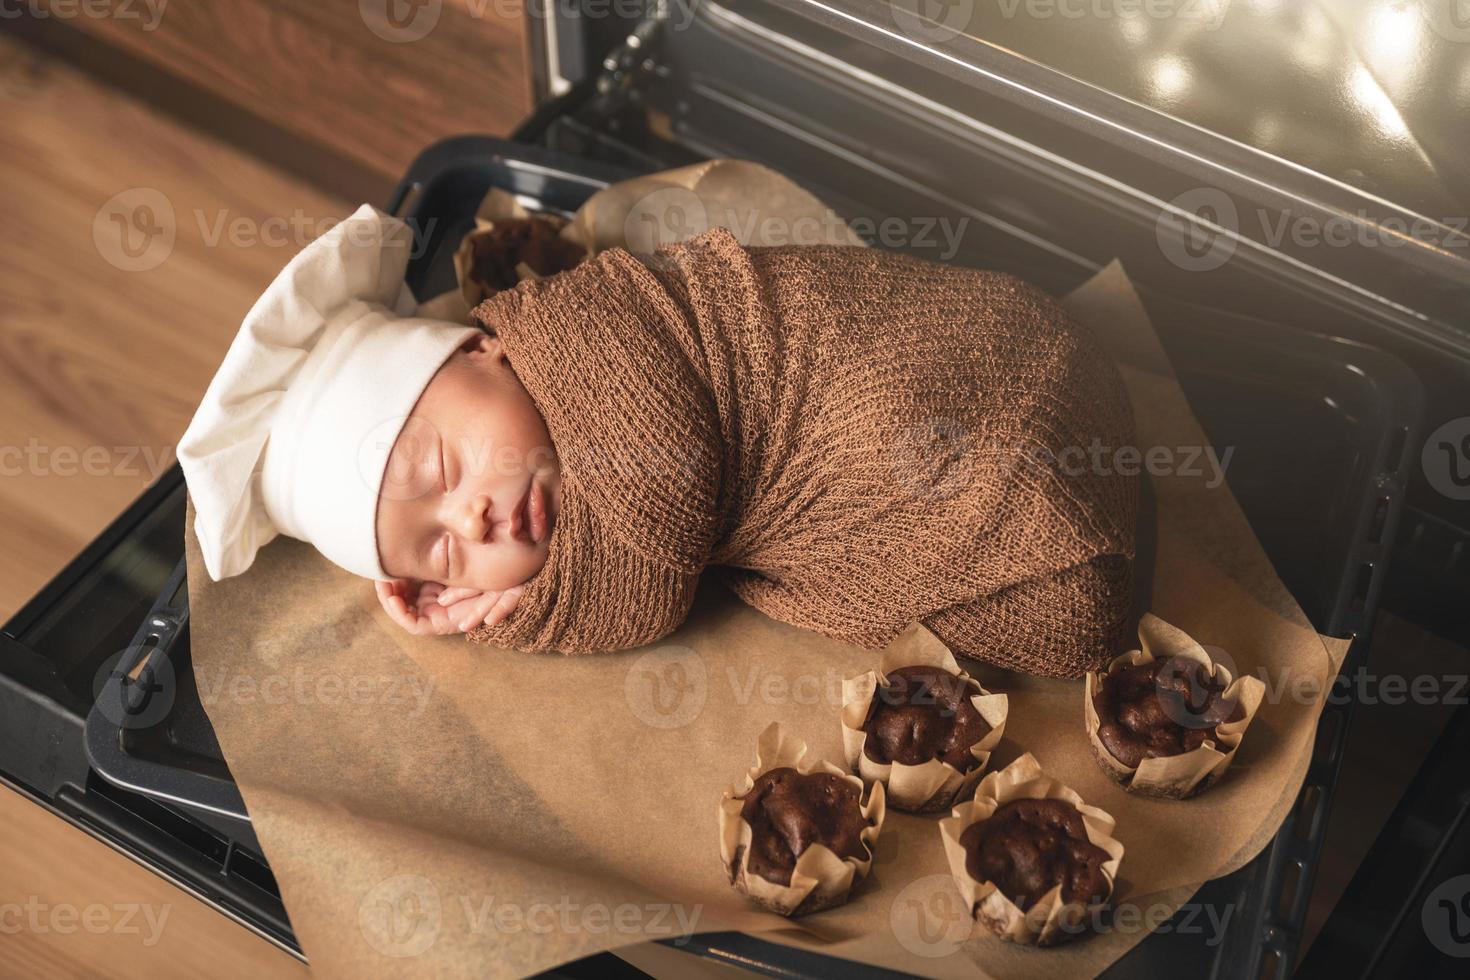 un bebé recién nacido con sombrero de chef está tirado en la bandeja del horno con muffins foto